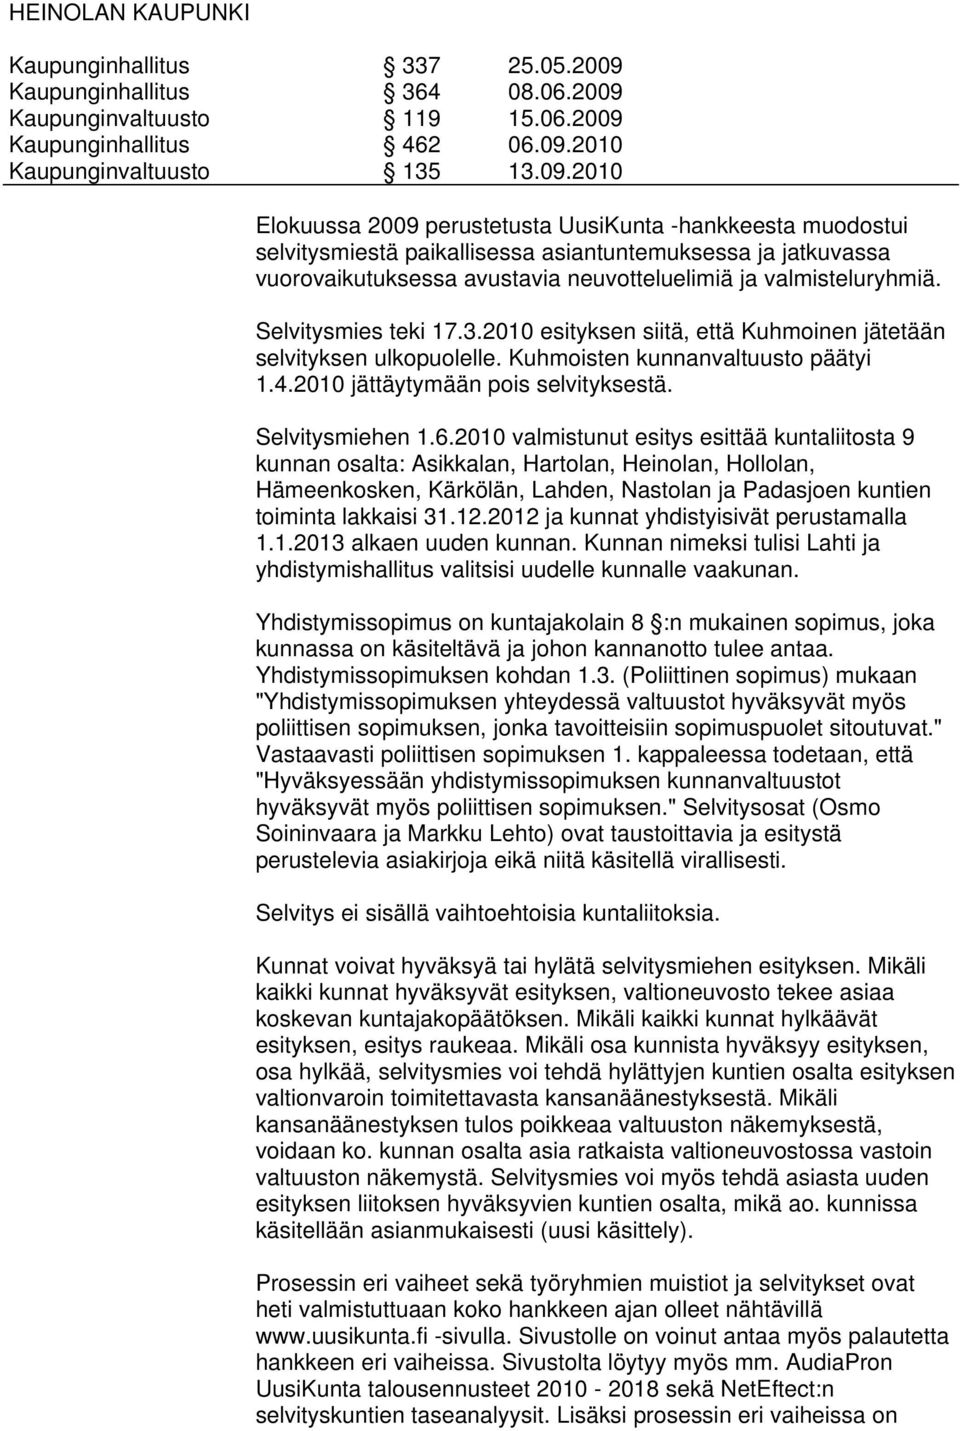 2010 valmistunut esitys esittää kuntaliitosta 9 kunnan osalta: Asikkalan, Hartolan, Heinolan, Hollolan, Hämeenkosken, Kärkölän, Lahden, Nastolan ja Padasjoen kuntien toiminta lakkaisi 31.12.